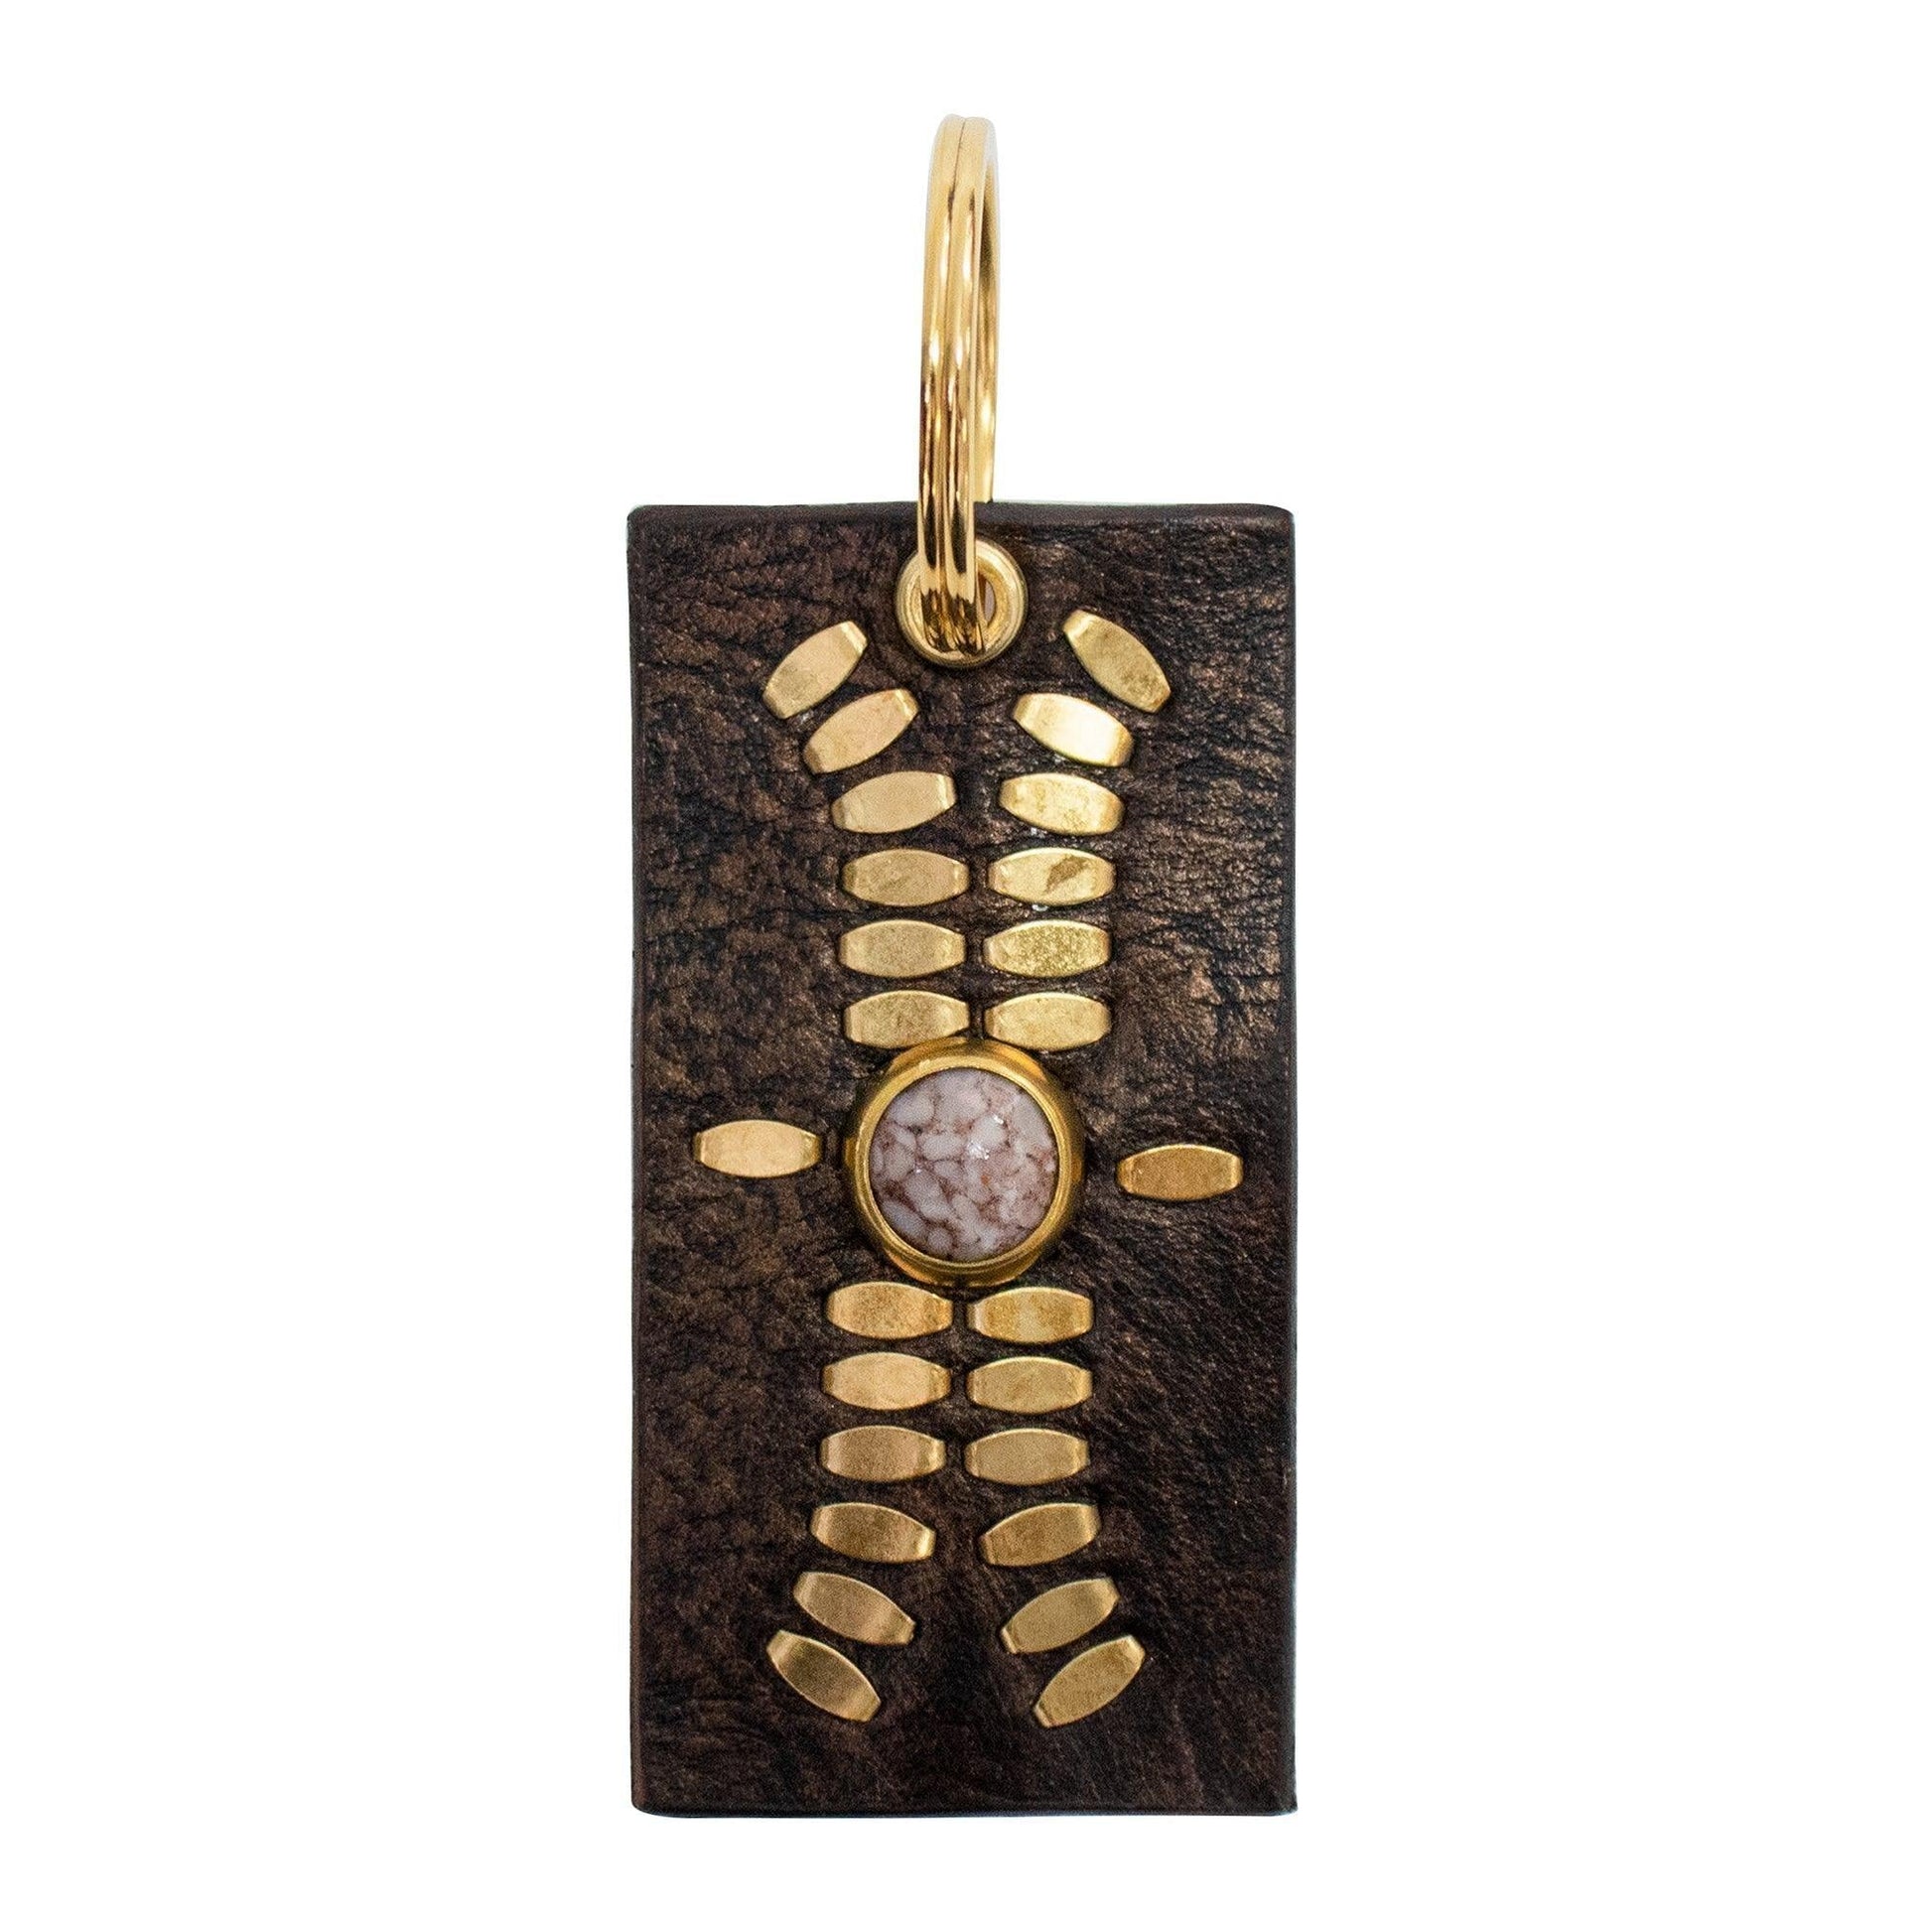 Dominic Semi-precious Stone Keychain - Calleen Cordero